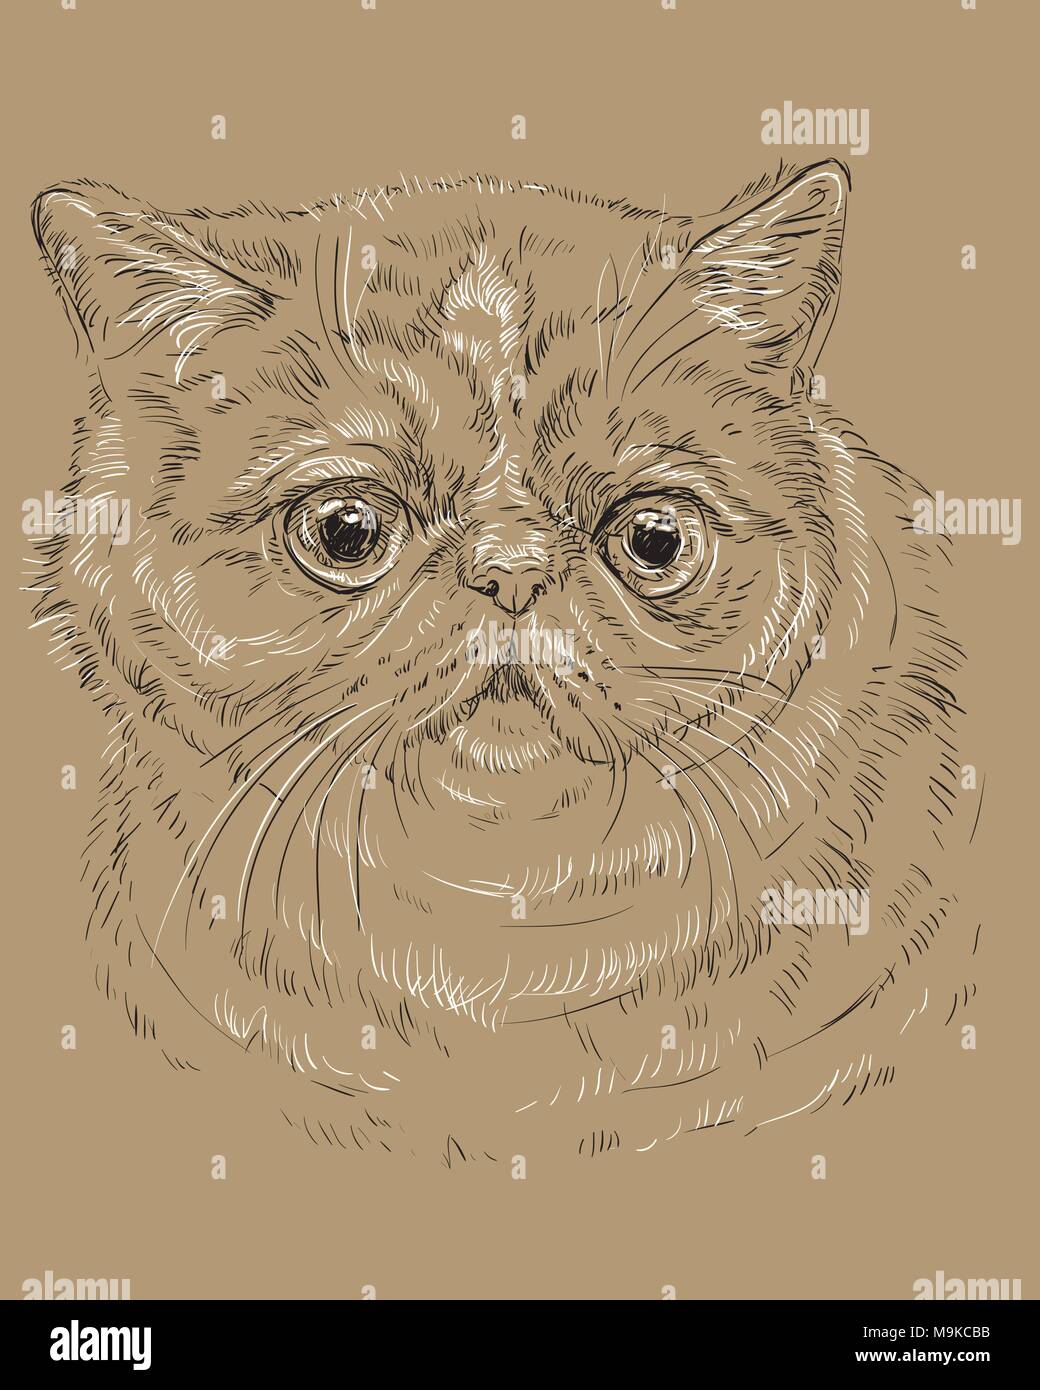 Vektor Kontur monochrome Portrait von neugierig und Exotic Shorthair Katze überrascht in den Farben Schwarz und Weiß. Hand Zeichnung Abbildung auf Stirn, isoliert Stock Vektor